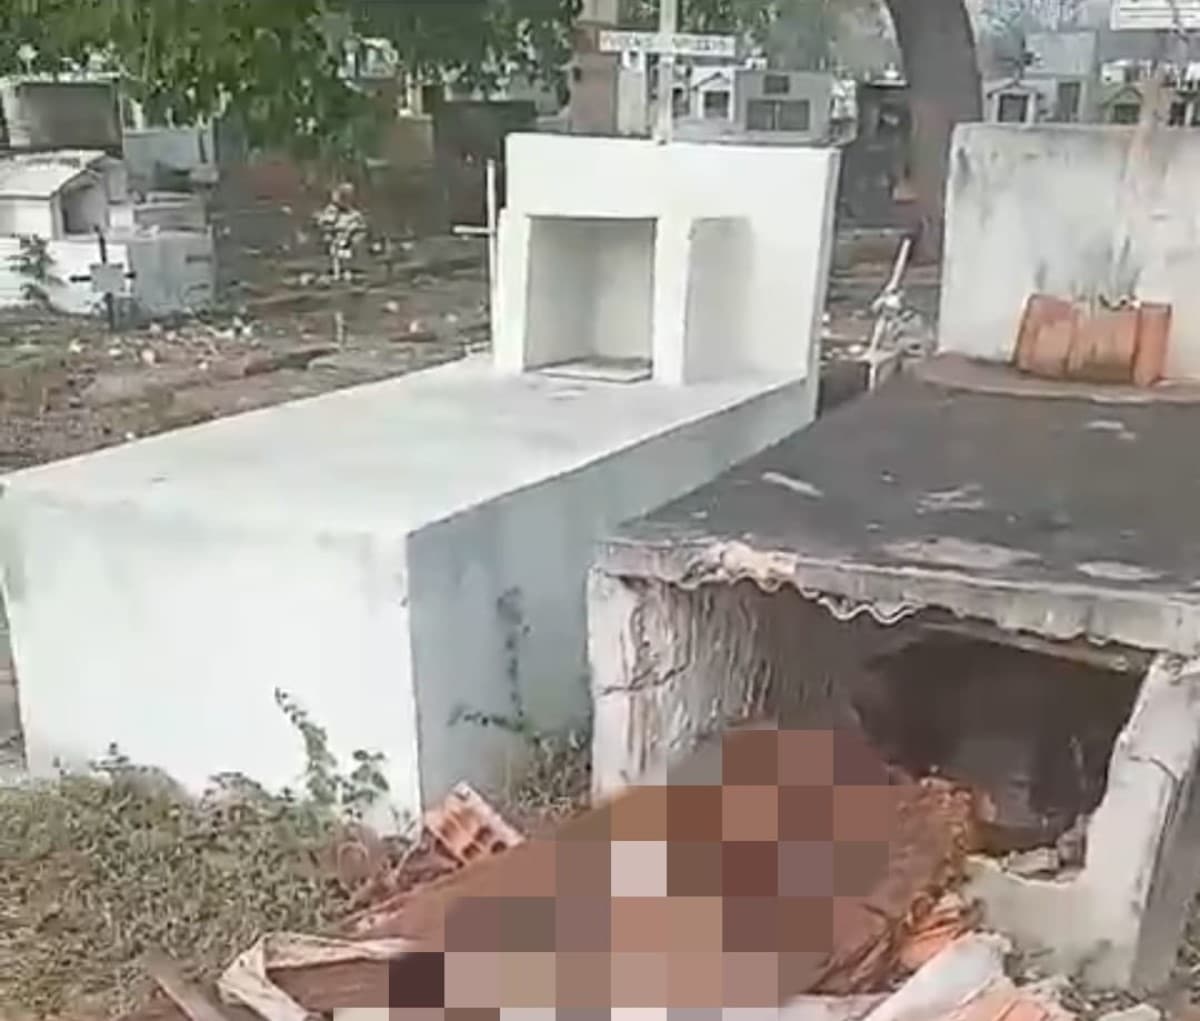 Túmulos são violados em cemitério de Várzea Grande; Polícia investiga o caso.